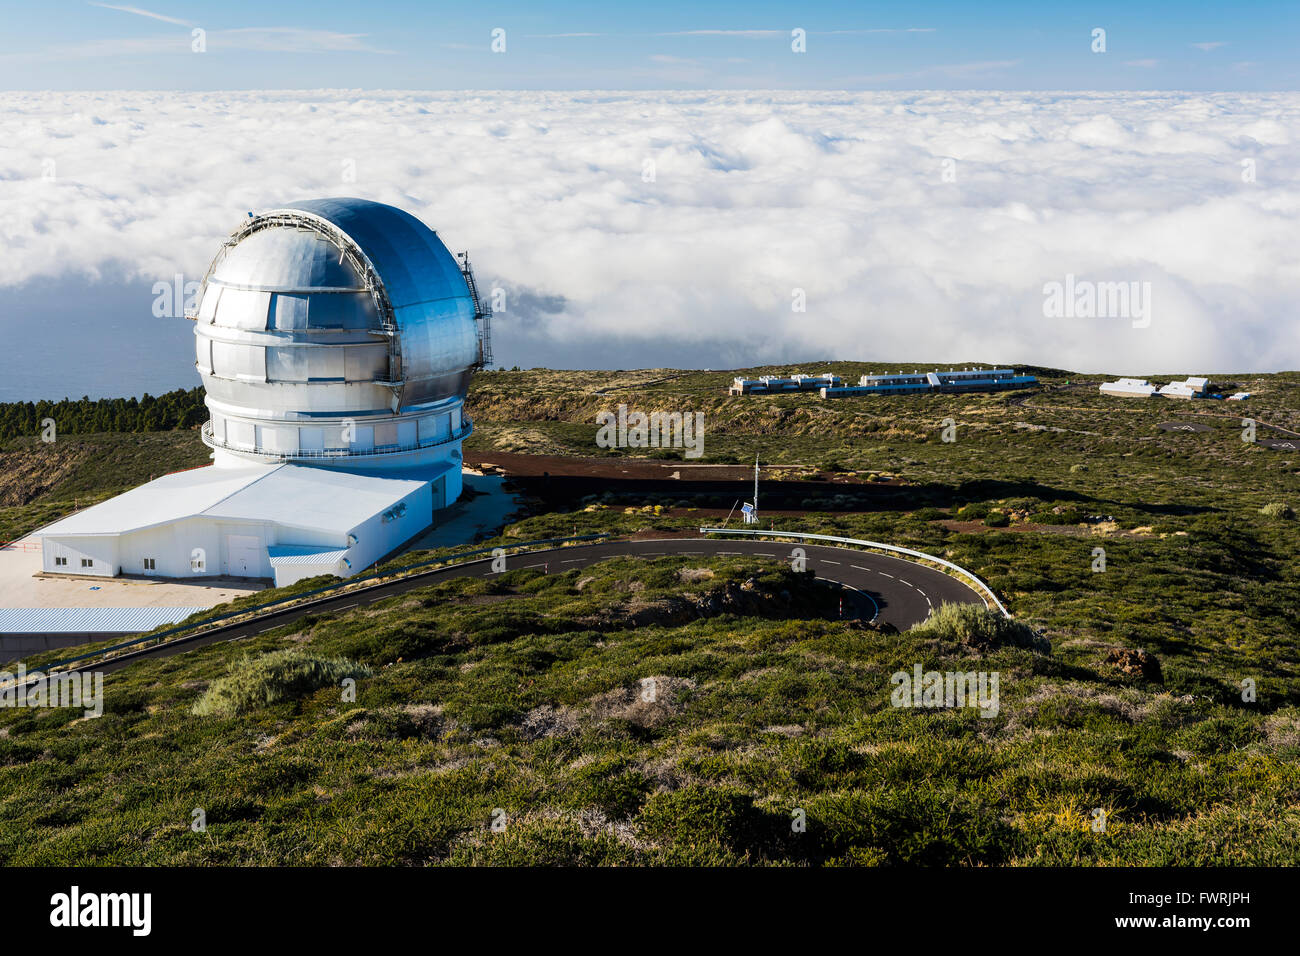 Das Gran Telescopio Canarias - GranTeCan oder AGB, auch bekannt als das große Kanarische Fernrohr. La Palma, Kanarische Inseln, Spanien Stockfoto